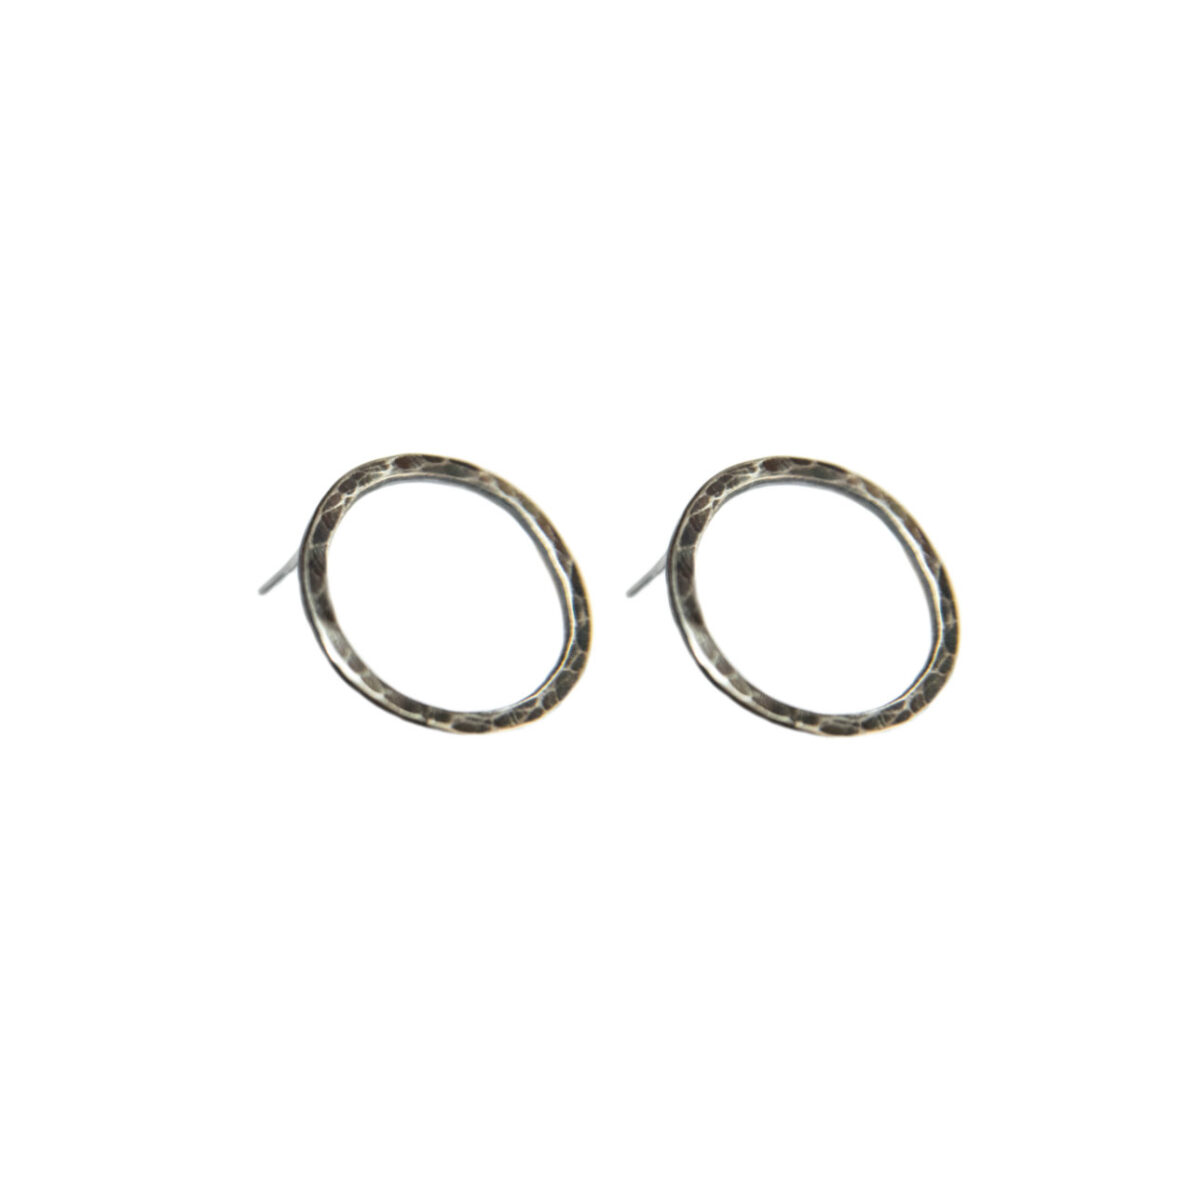 “Ear-rings” ασημένια σκουλαρίκια “Ear-rings” ασημένια σκουλαρίκια “Ear-rings” ασημένια σκουλαρίκια 5